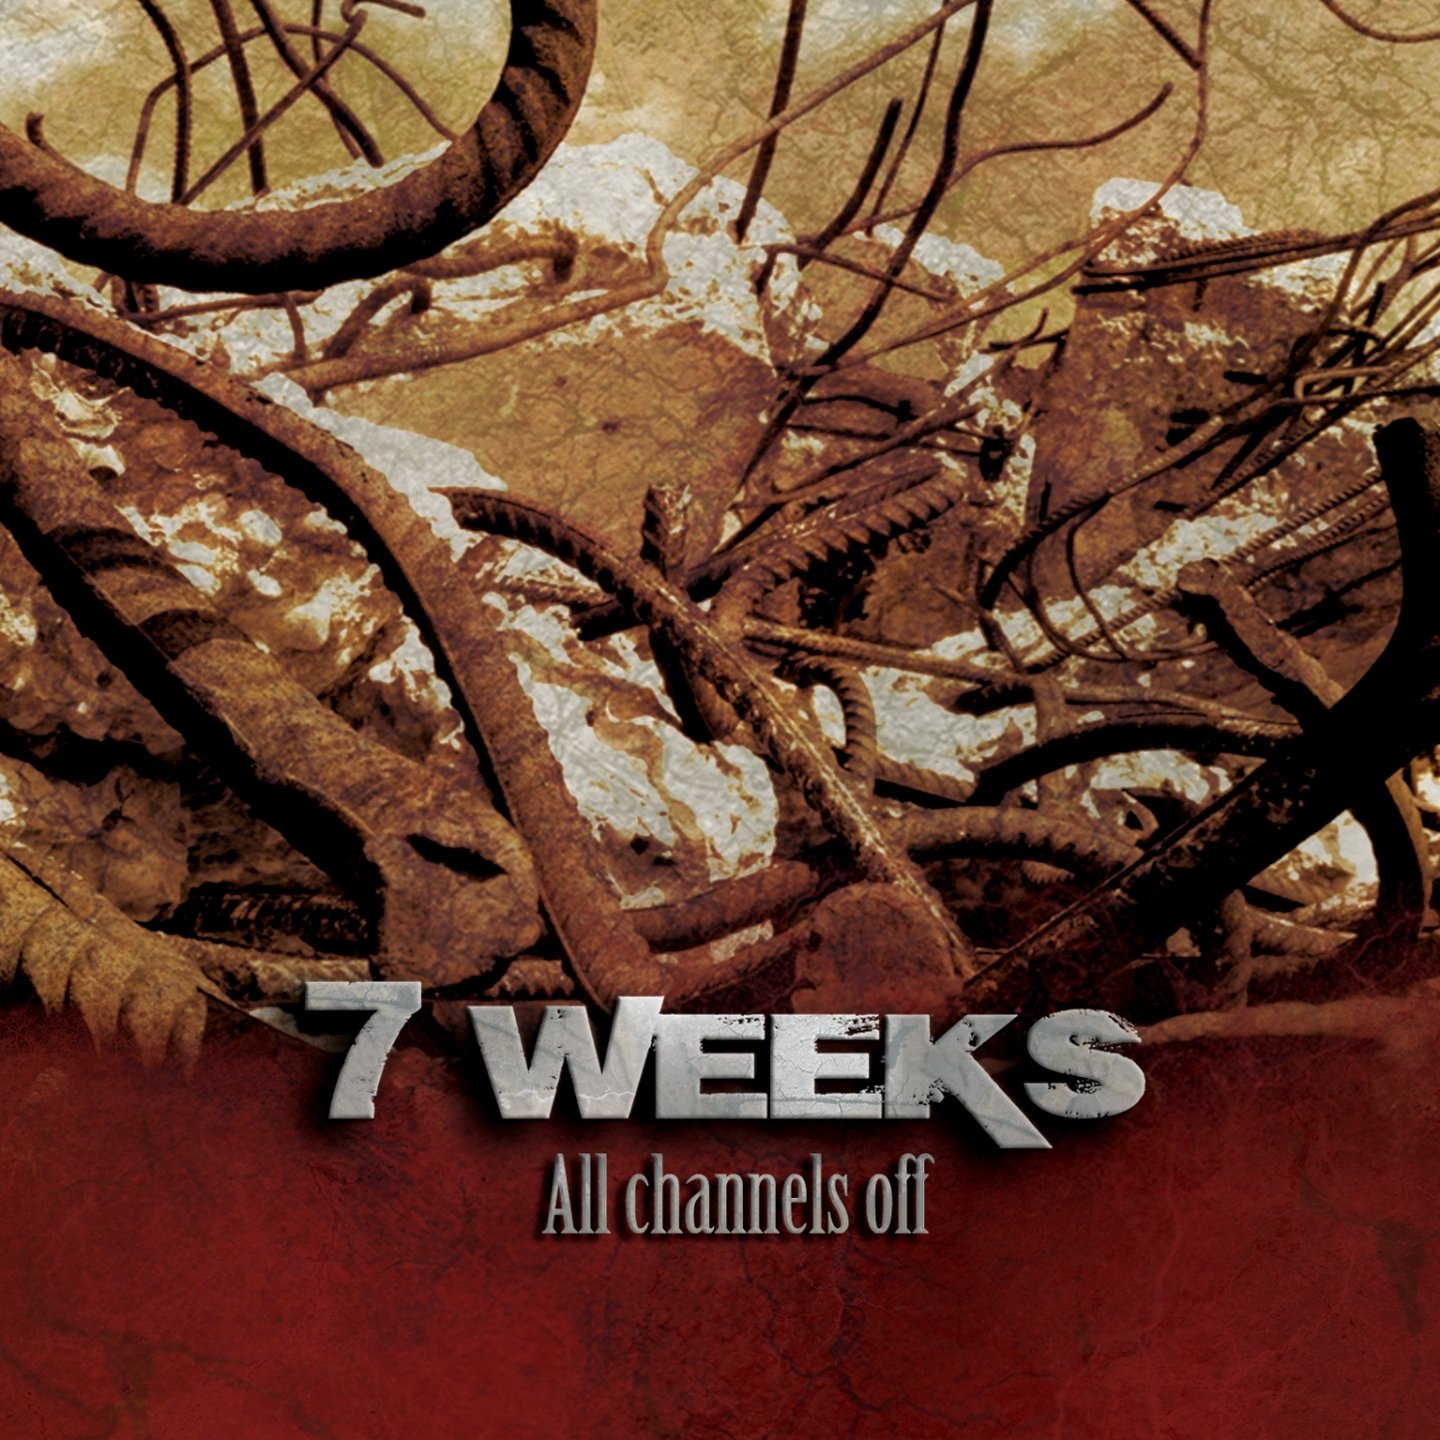 7 weeks